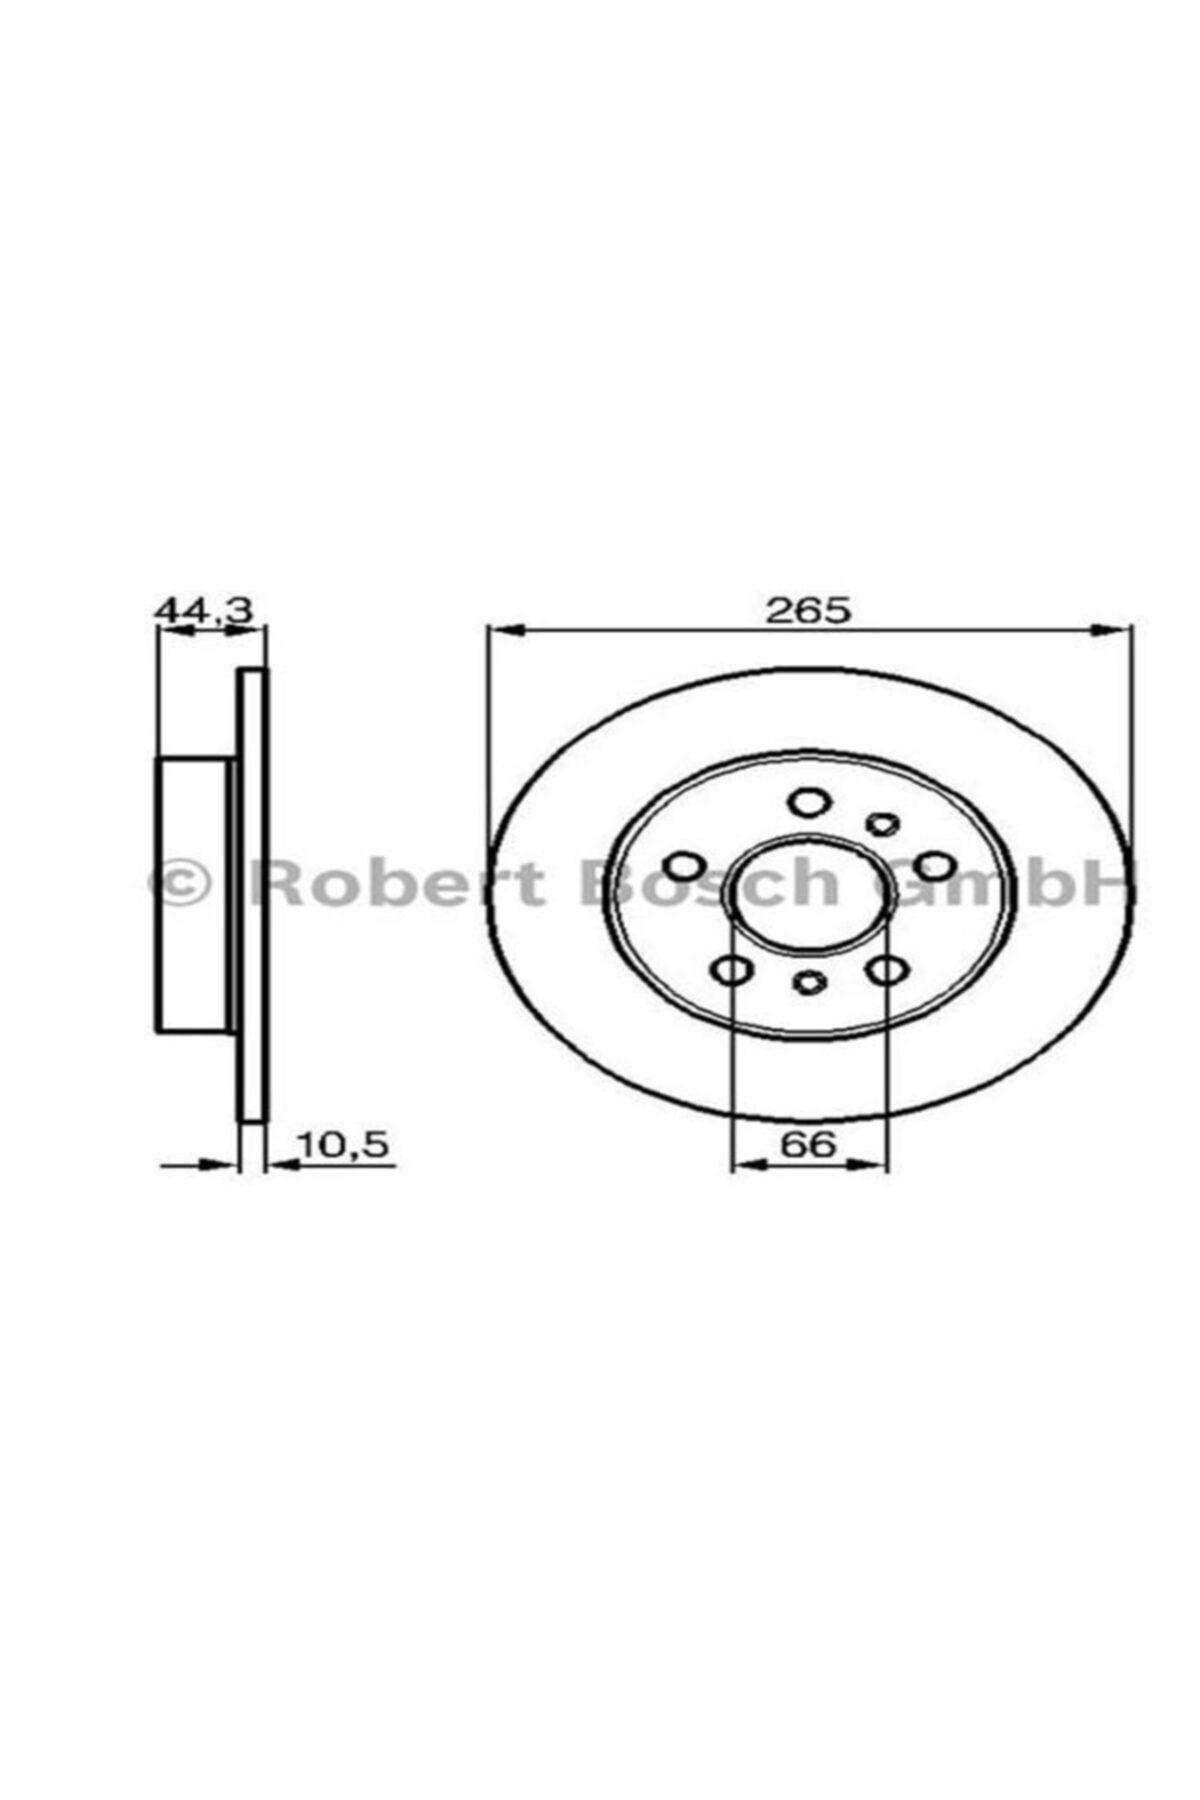 Bosch Arka Fren Aynası Lgn B56 2.0. 2.2td 94 -safr 92 264.7x10.5x5dl Uyumlu